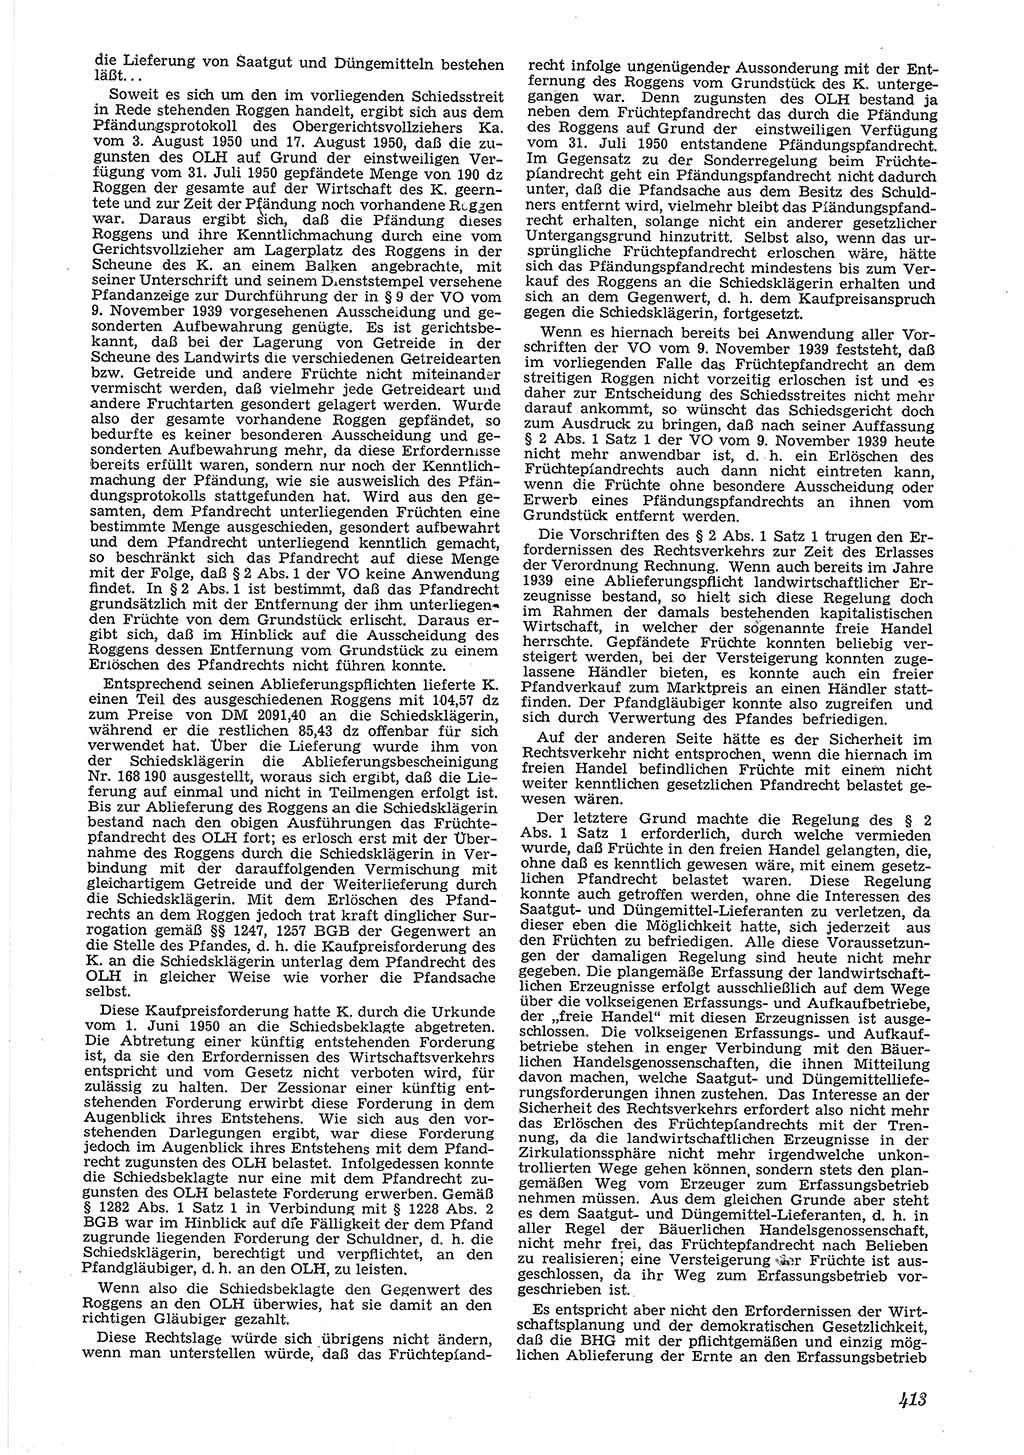 Neue Justiz (NJ), Zeitschrift für Recht und Rechtswissenschaft [Deutsche Demokratische Republik (DDR)], 6. Jahrgang 1952, Seite 413 (NJ DDR 1952, S. 413)